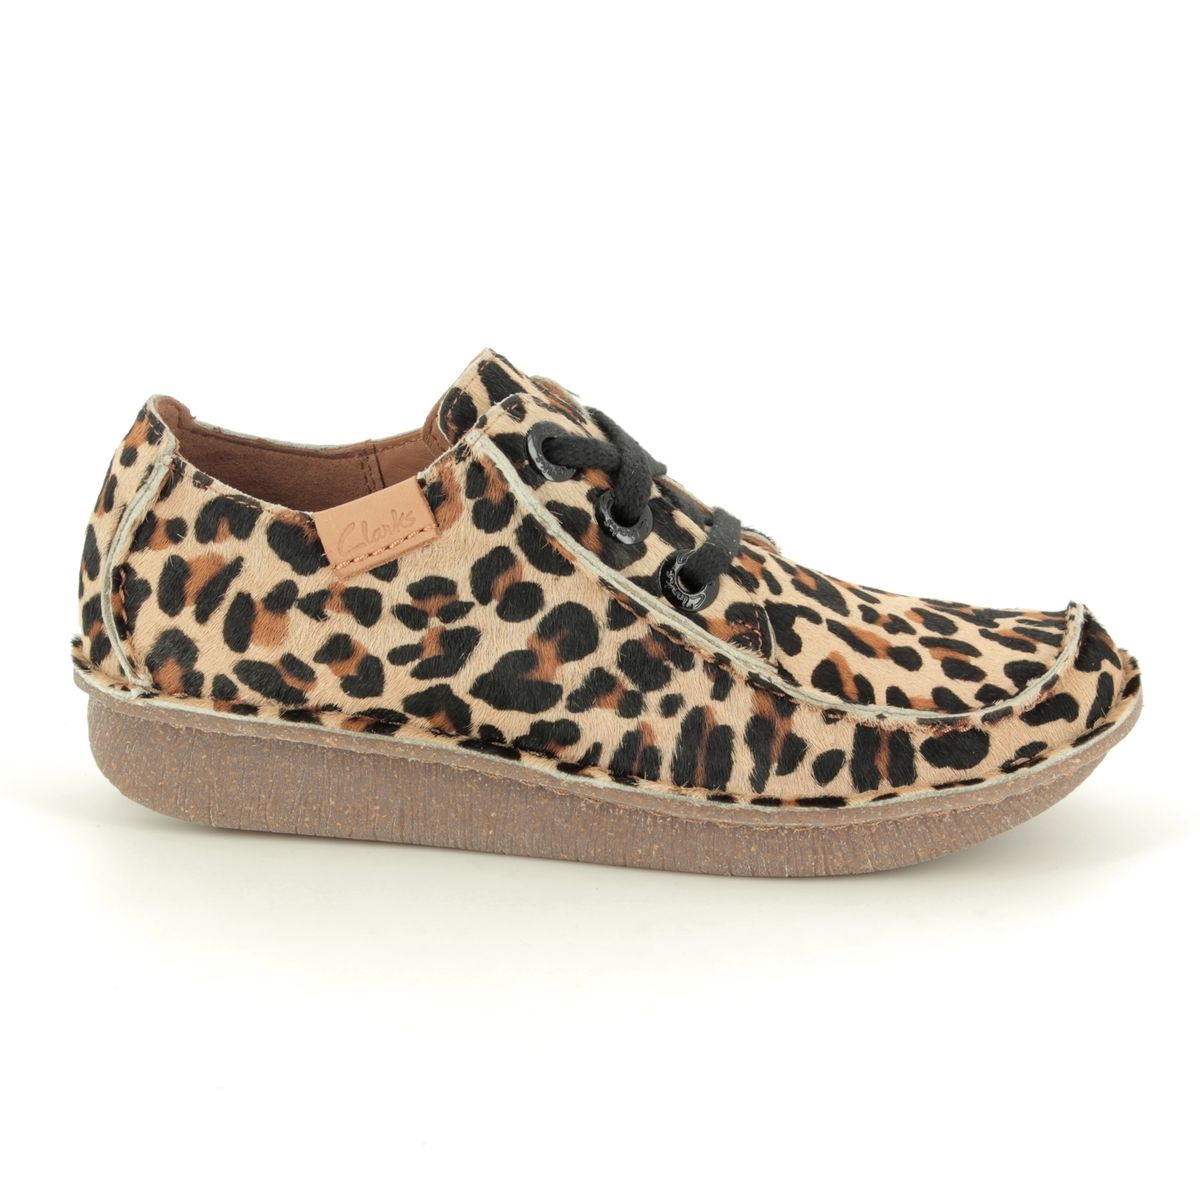 clarks leopard sandals